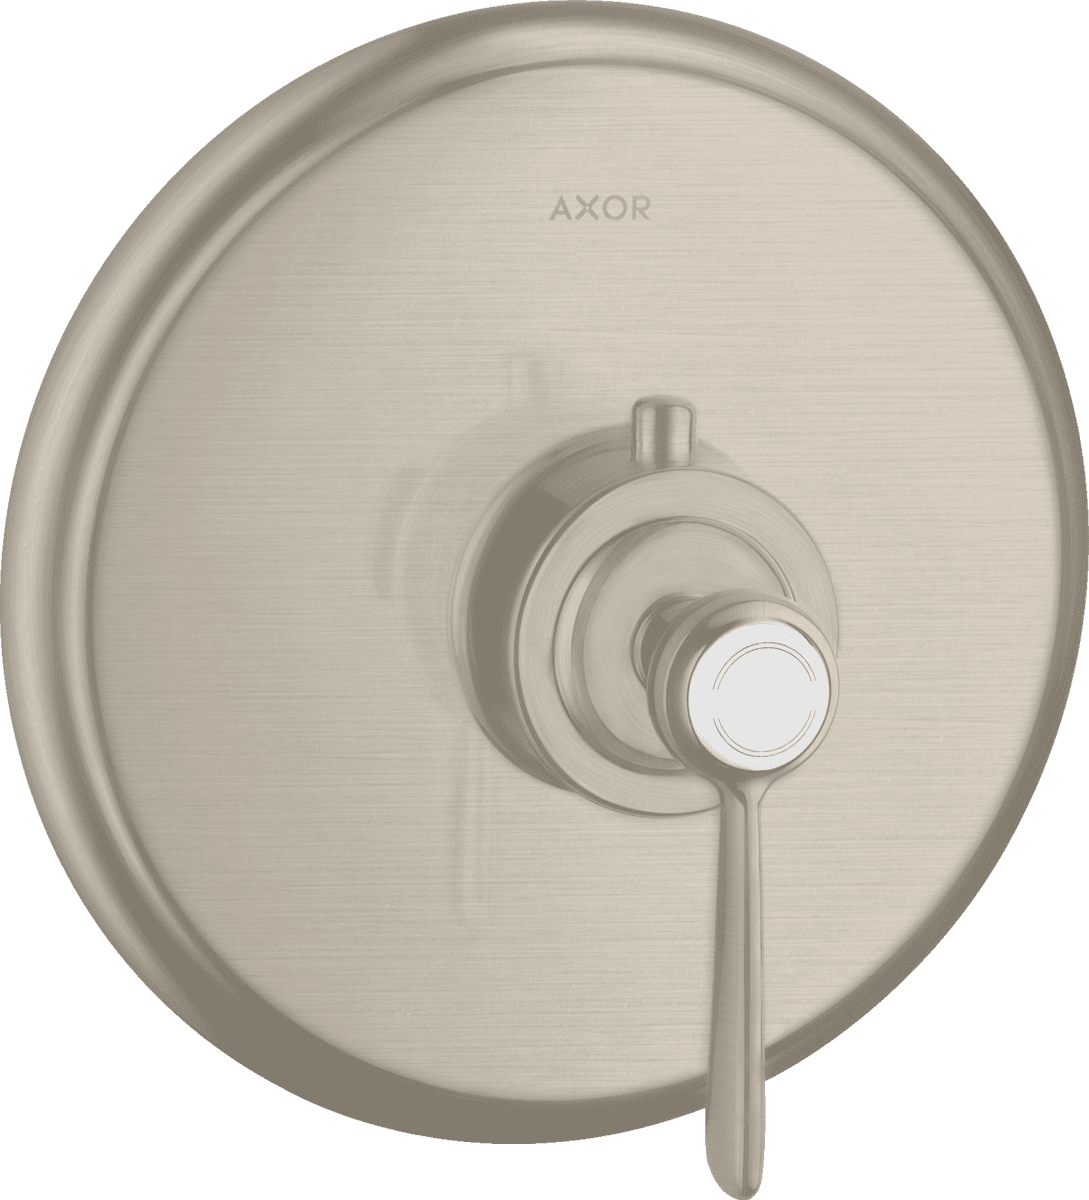 εικόνα του HANSGROHE AXOR Montreux Thermostat for concealed installation with lever handle #16823820 - Brushed Nickel